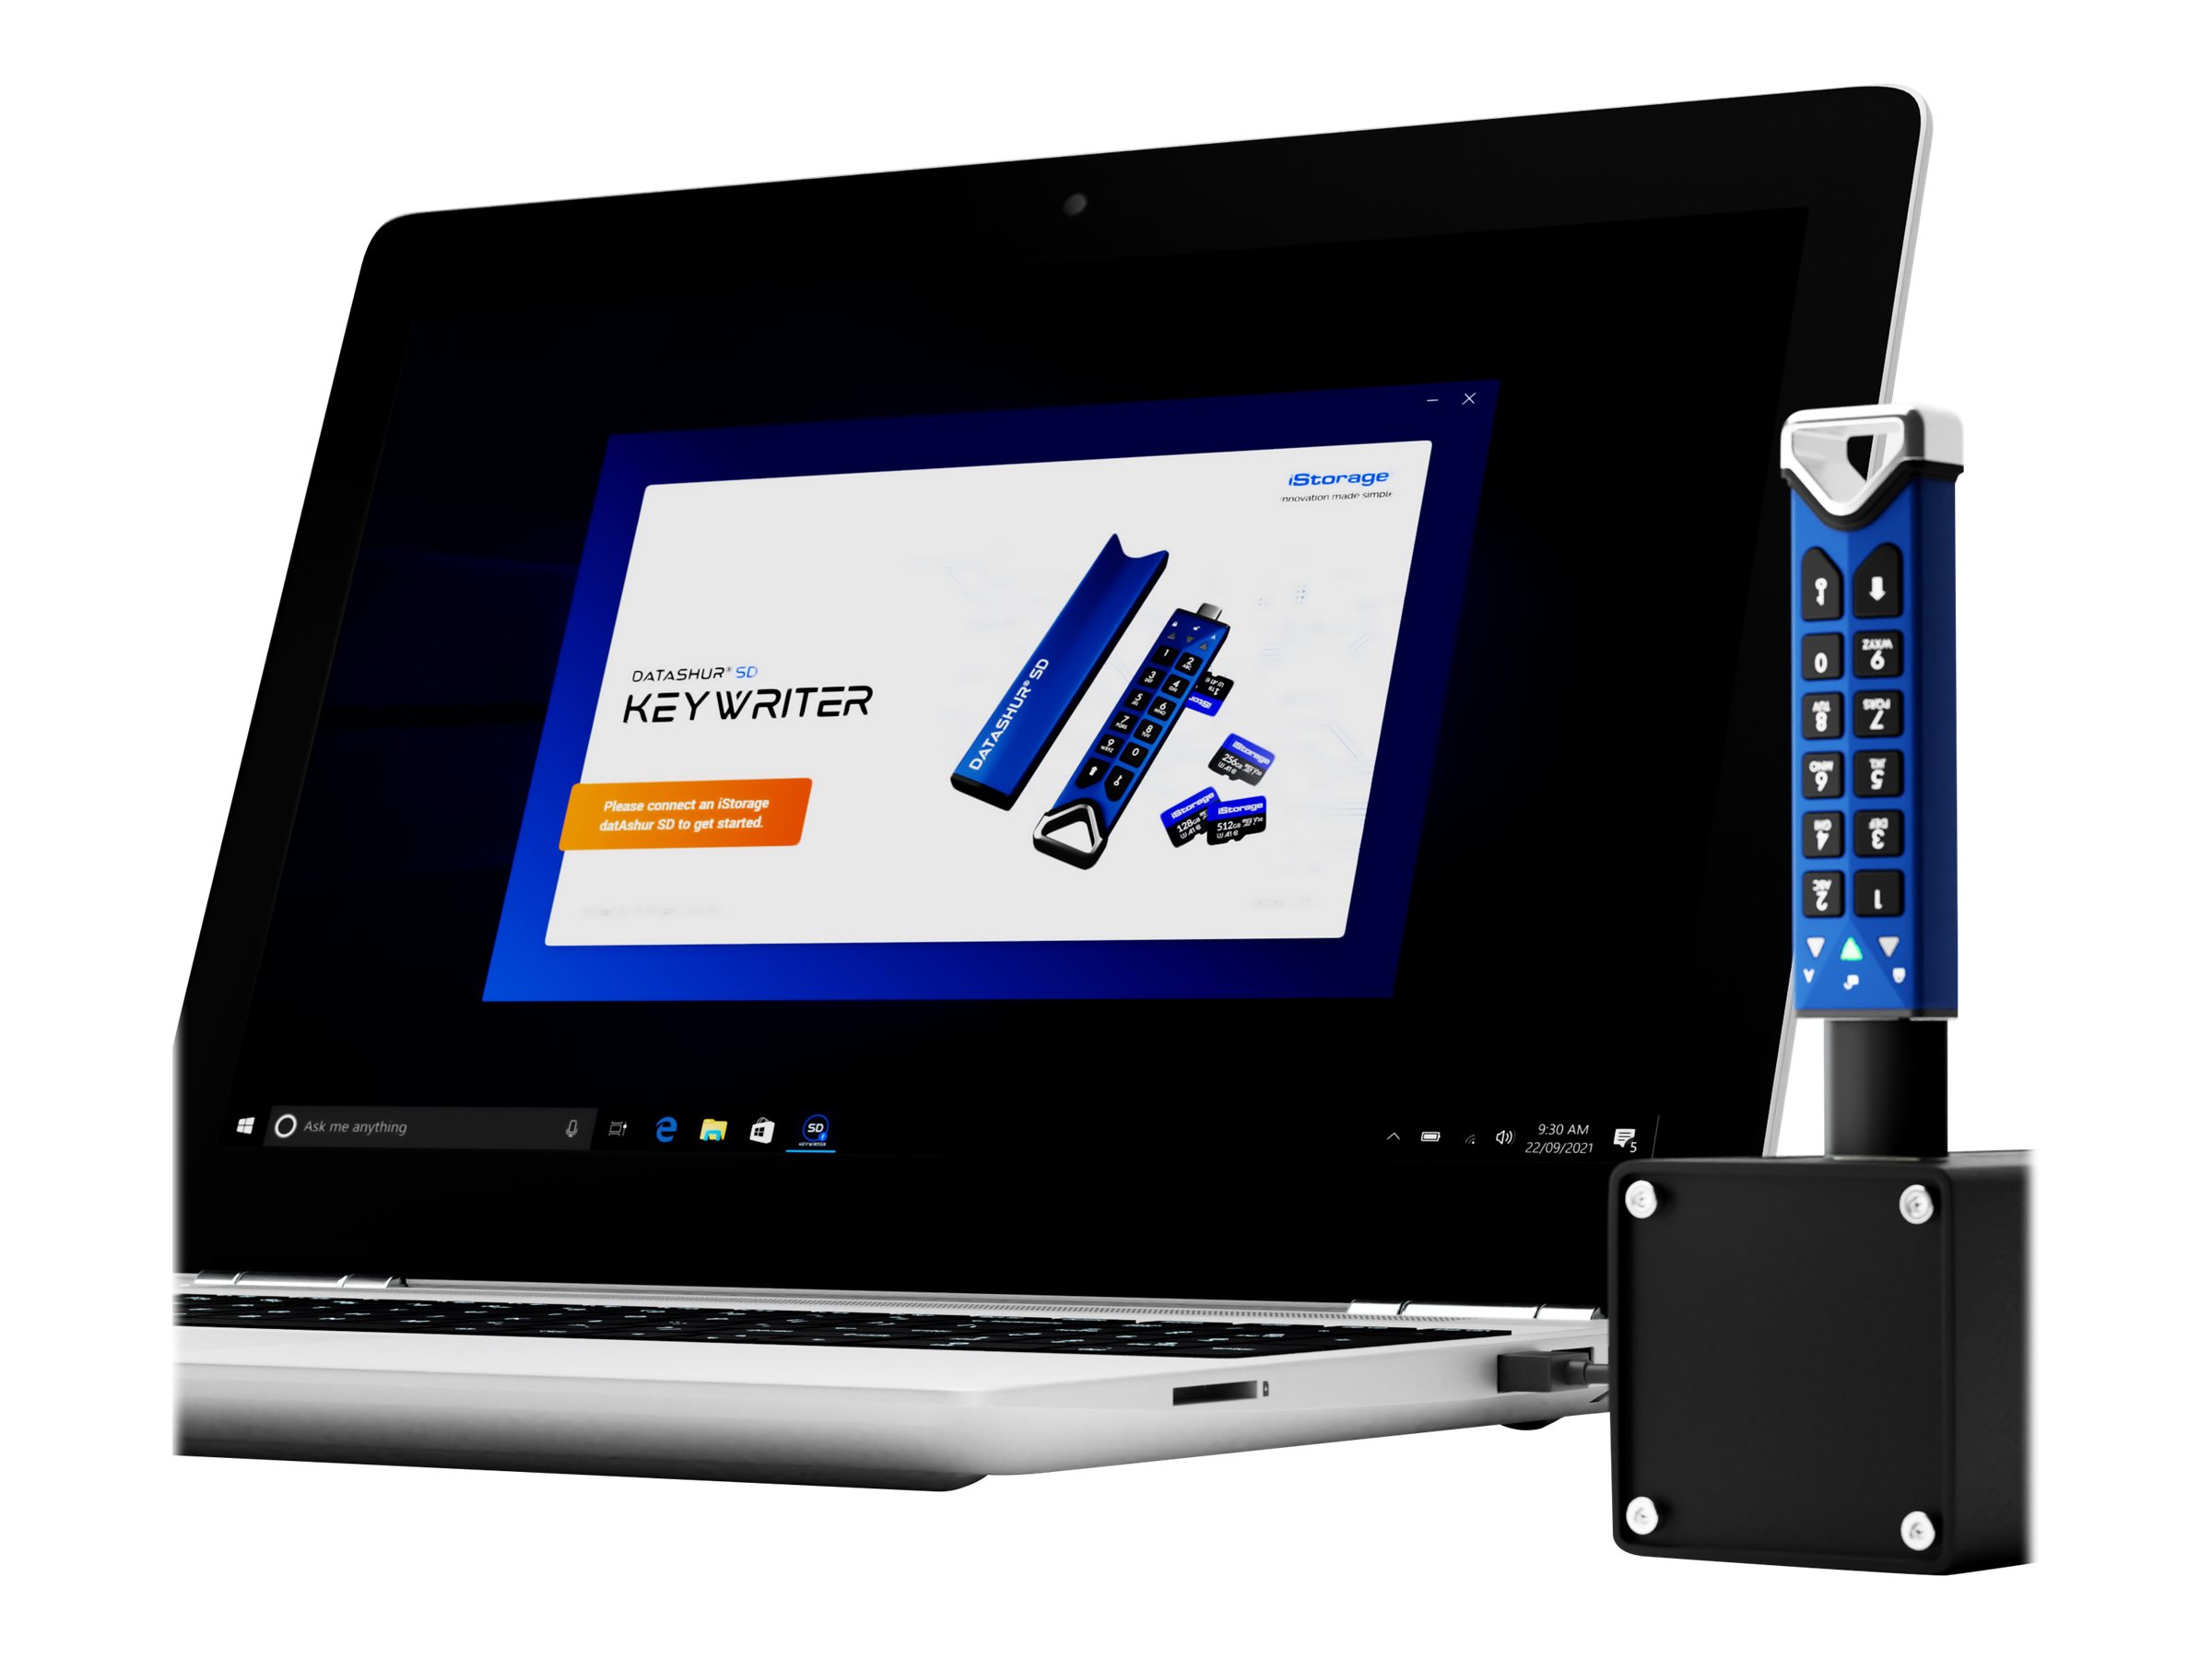 iStorage datAshur SD KeyWriter - Lizenz - Volumen - 500-999 Lizenzen - Linux, Win, Mac, Android, Chrome OS